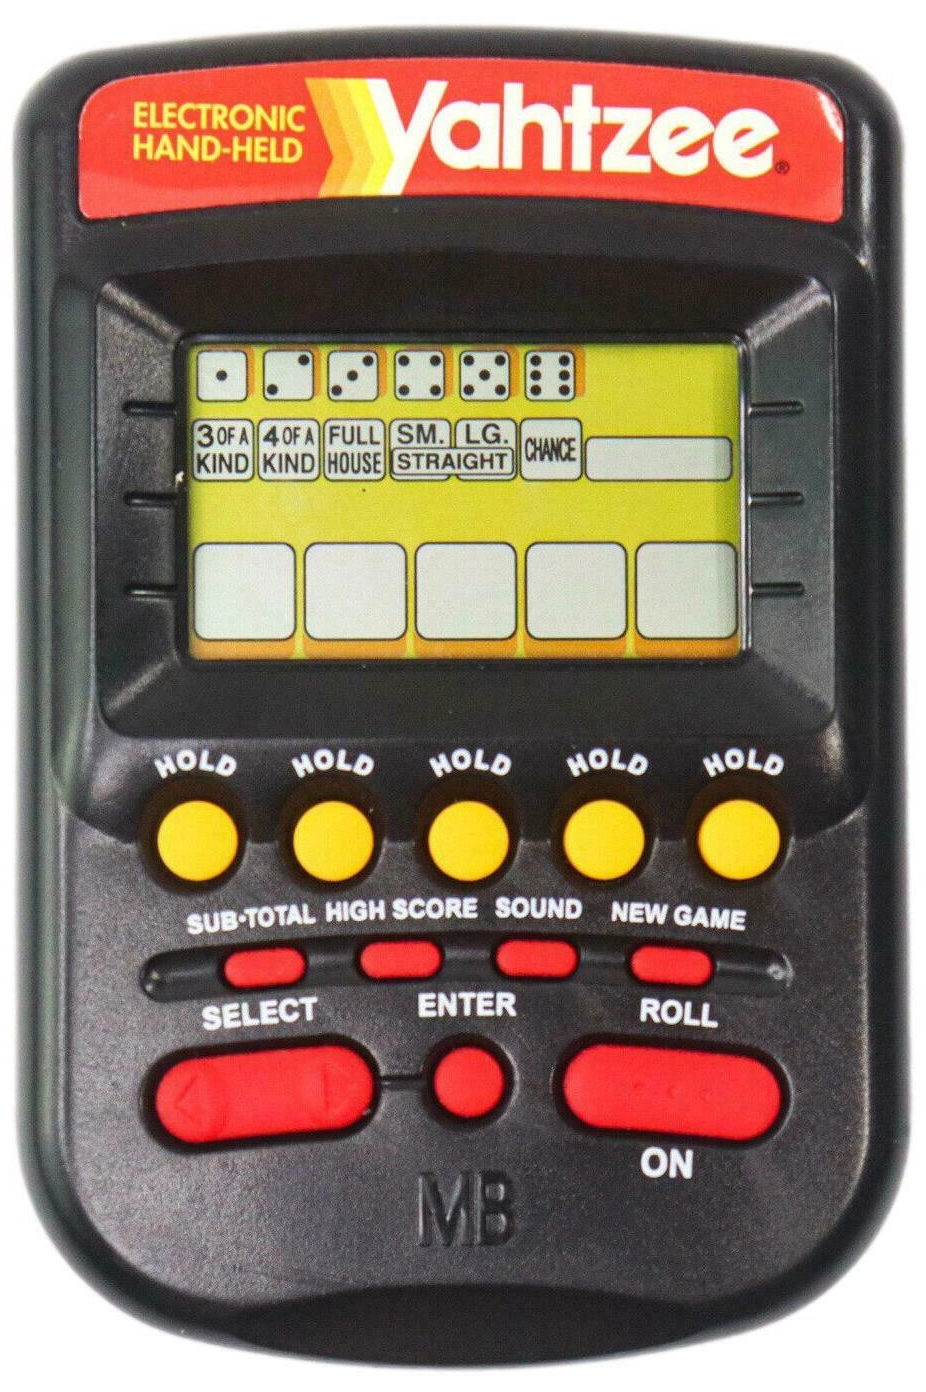 1995 electronic Yahtzee handheld game